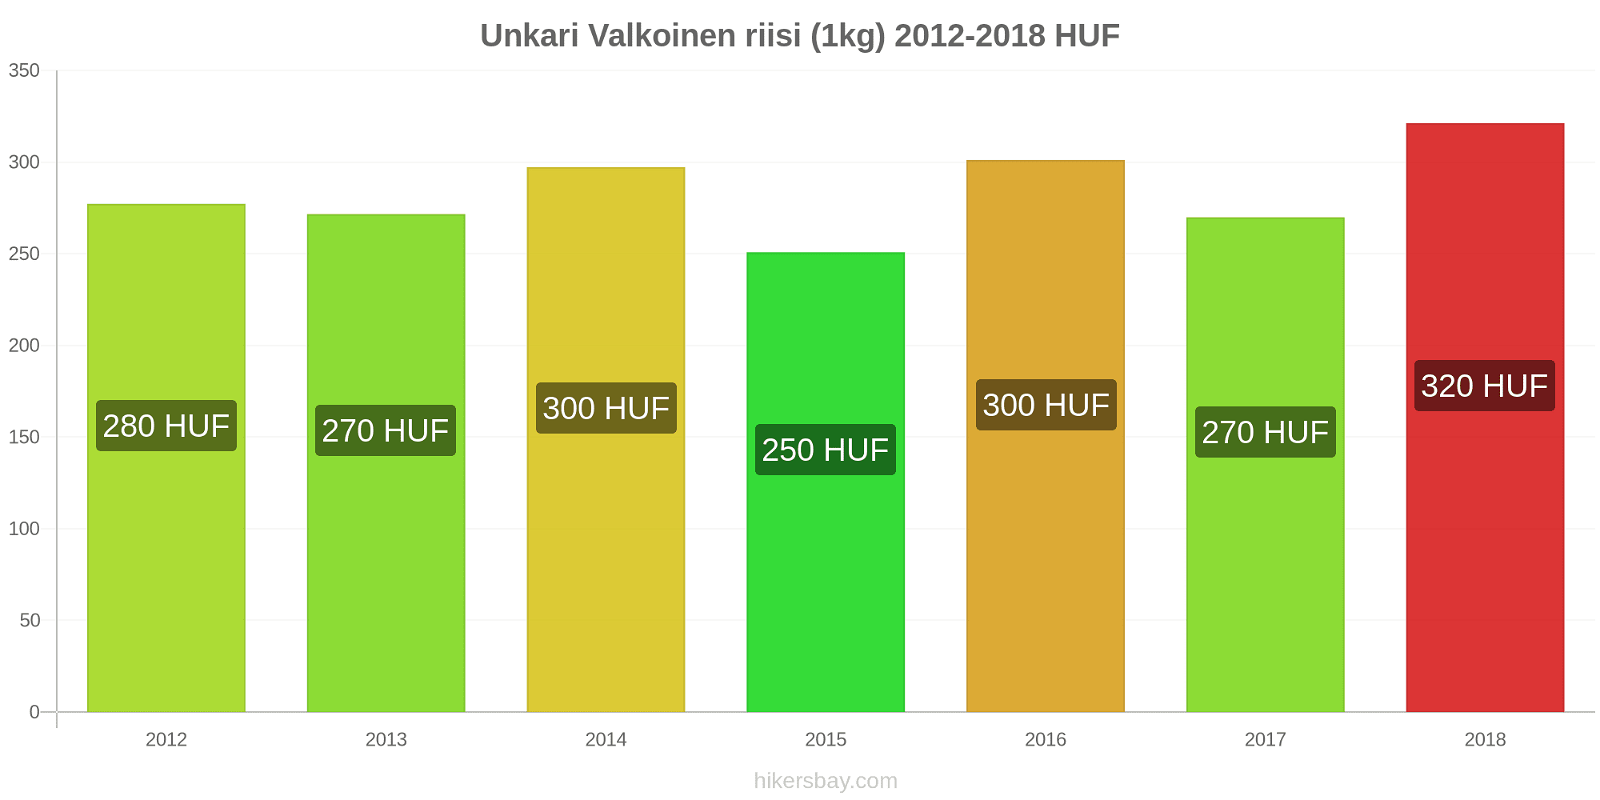 Unkari hintojen muutokset Valkoinen riisi (1kg) hikersbay.com